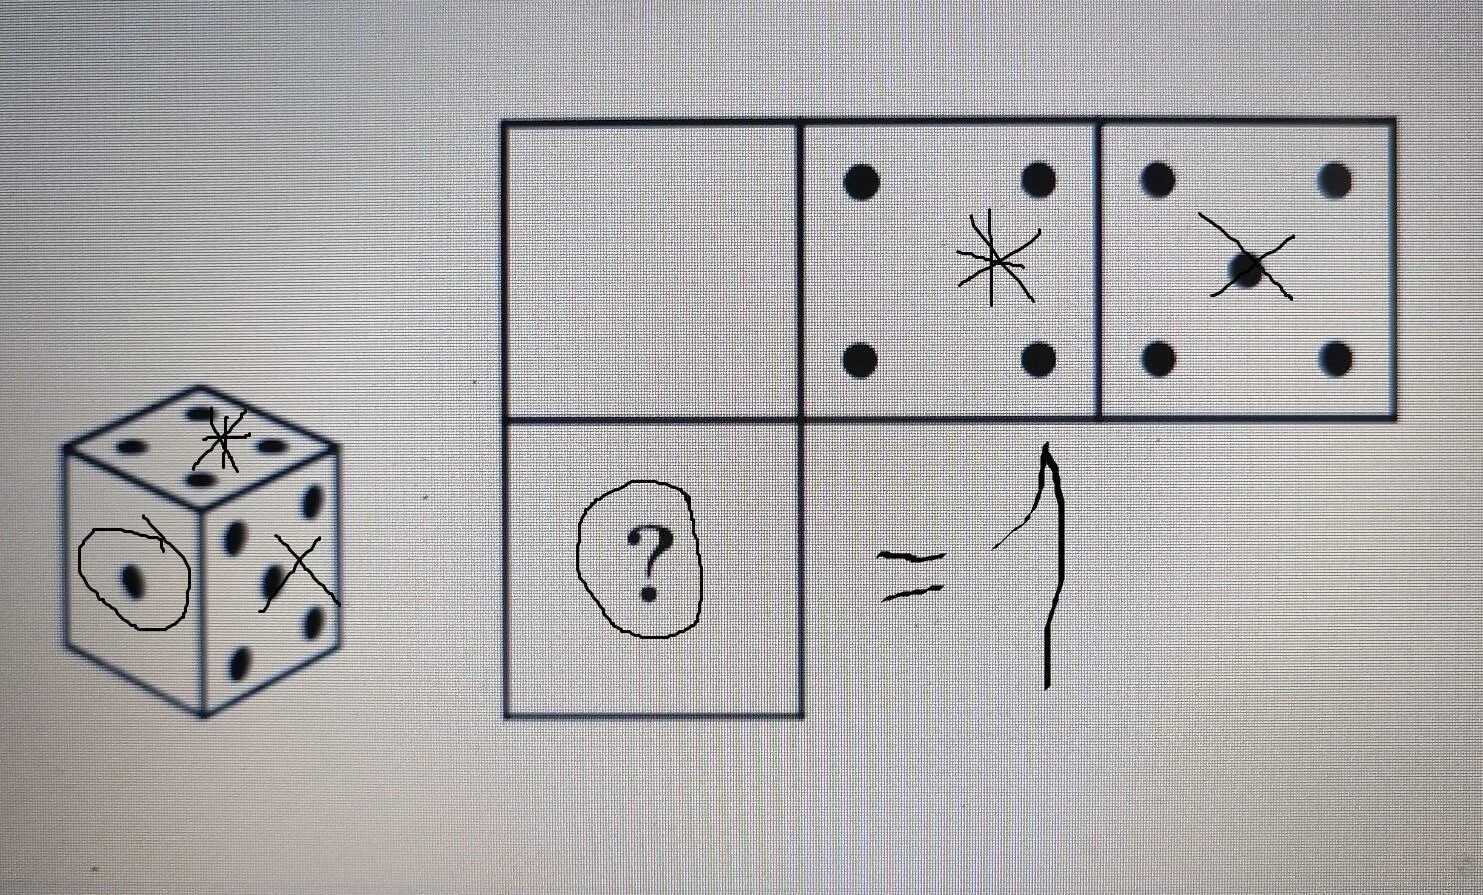 Расположение точек на игральном кубике. Грани кубика с точками. Картина из игральных кубиков. Игральный кубик развертка.